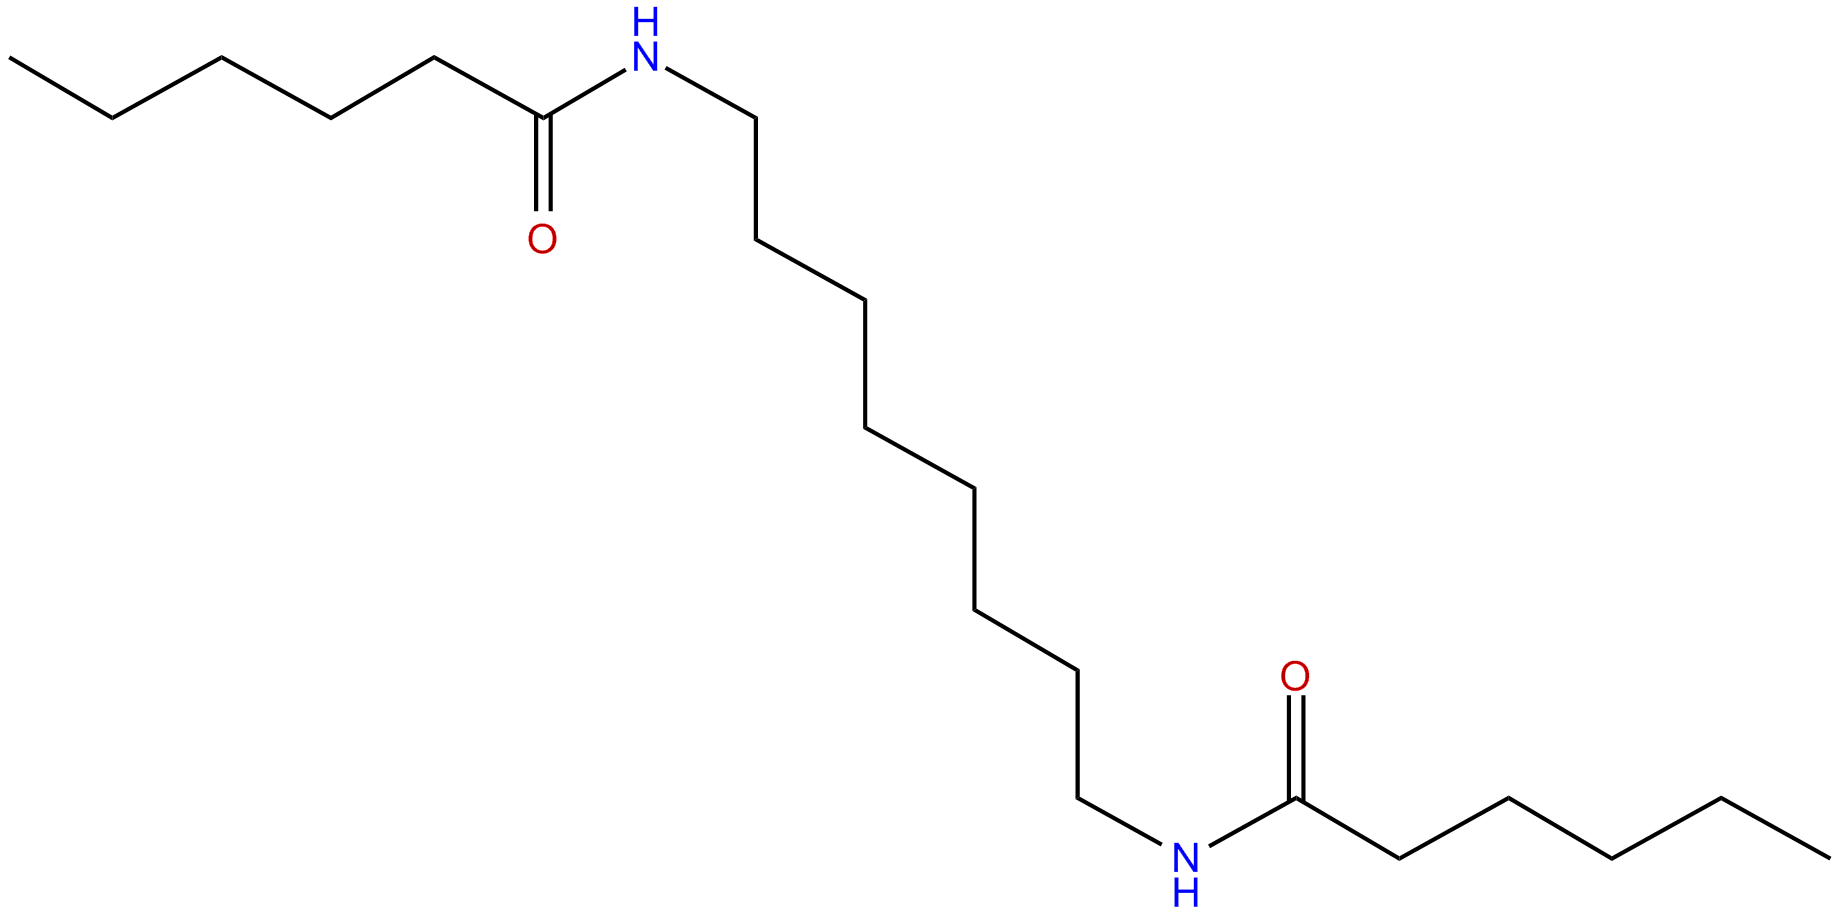 Image of N,N'-1,8-octanediylbishexanamide